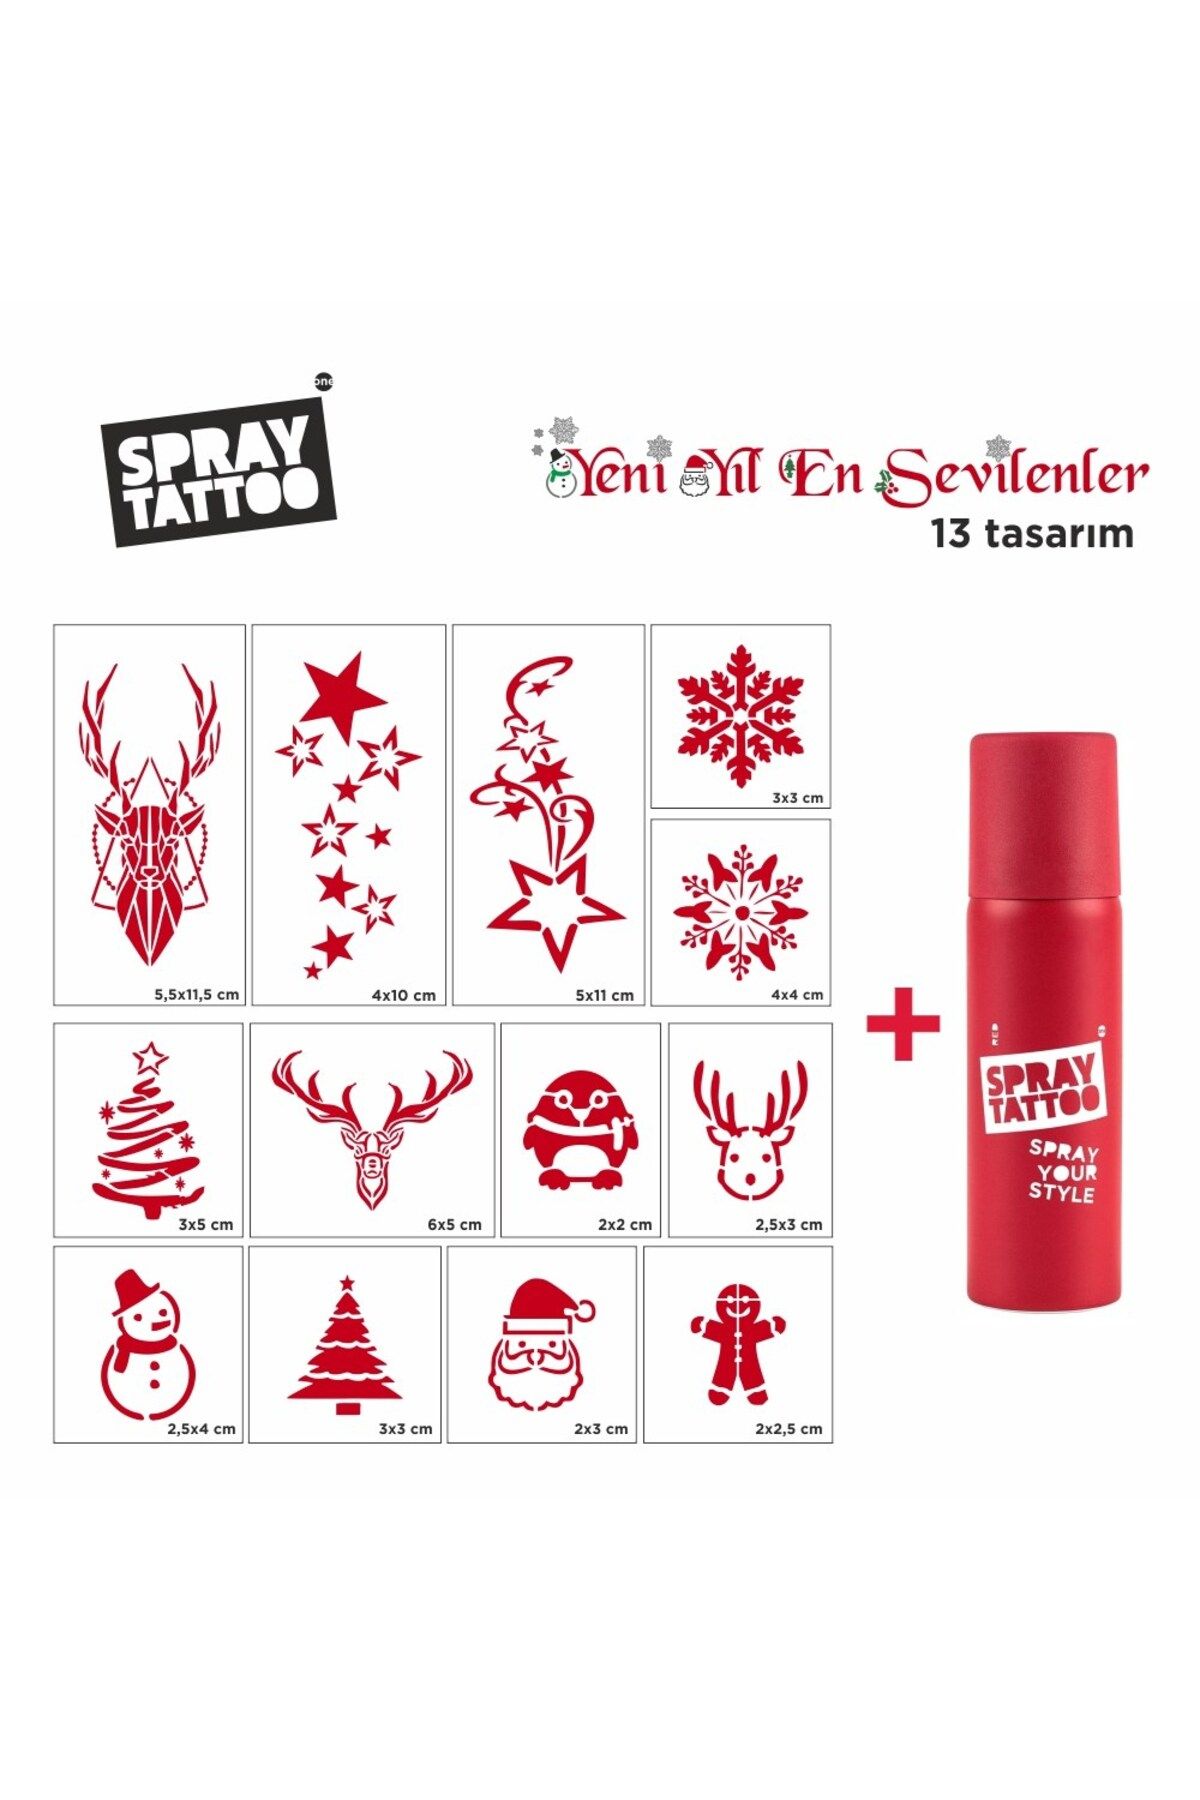 One Spray Tattoo Yeni Yılın En Sevilen Geçici Dövme Seti + Kırmızı Sprey